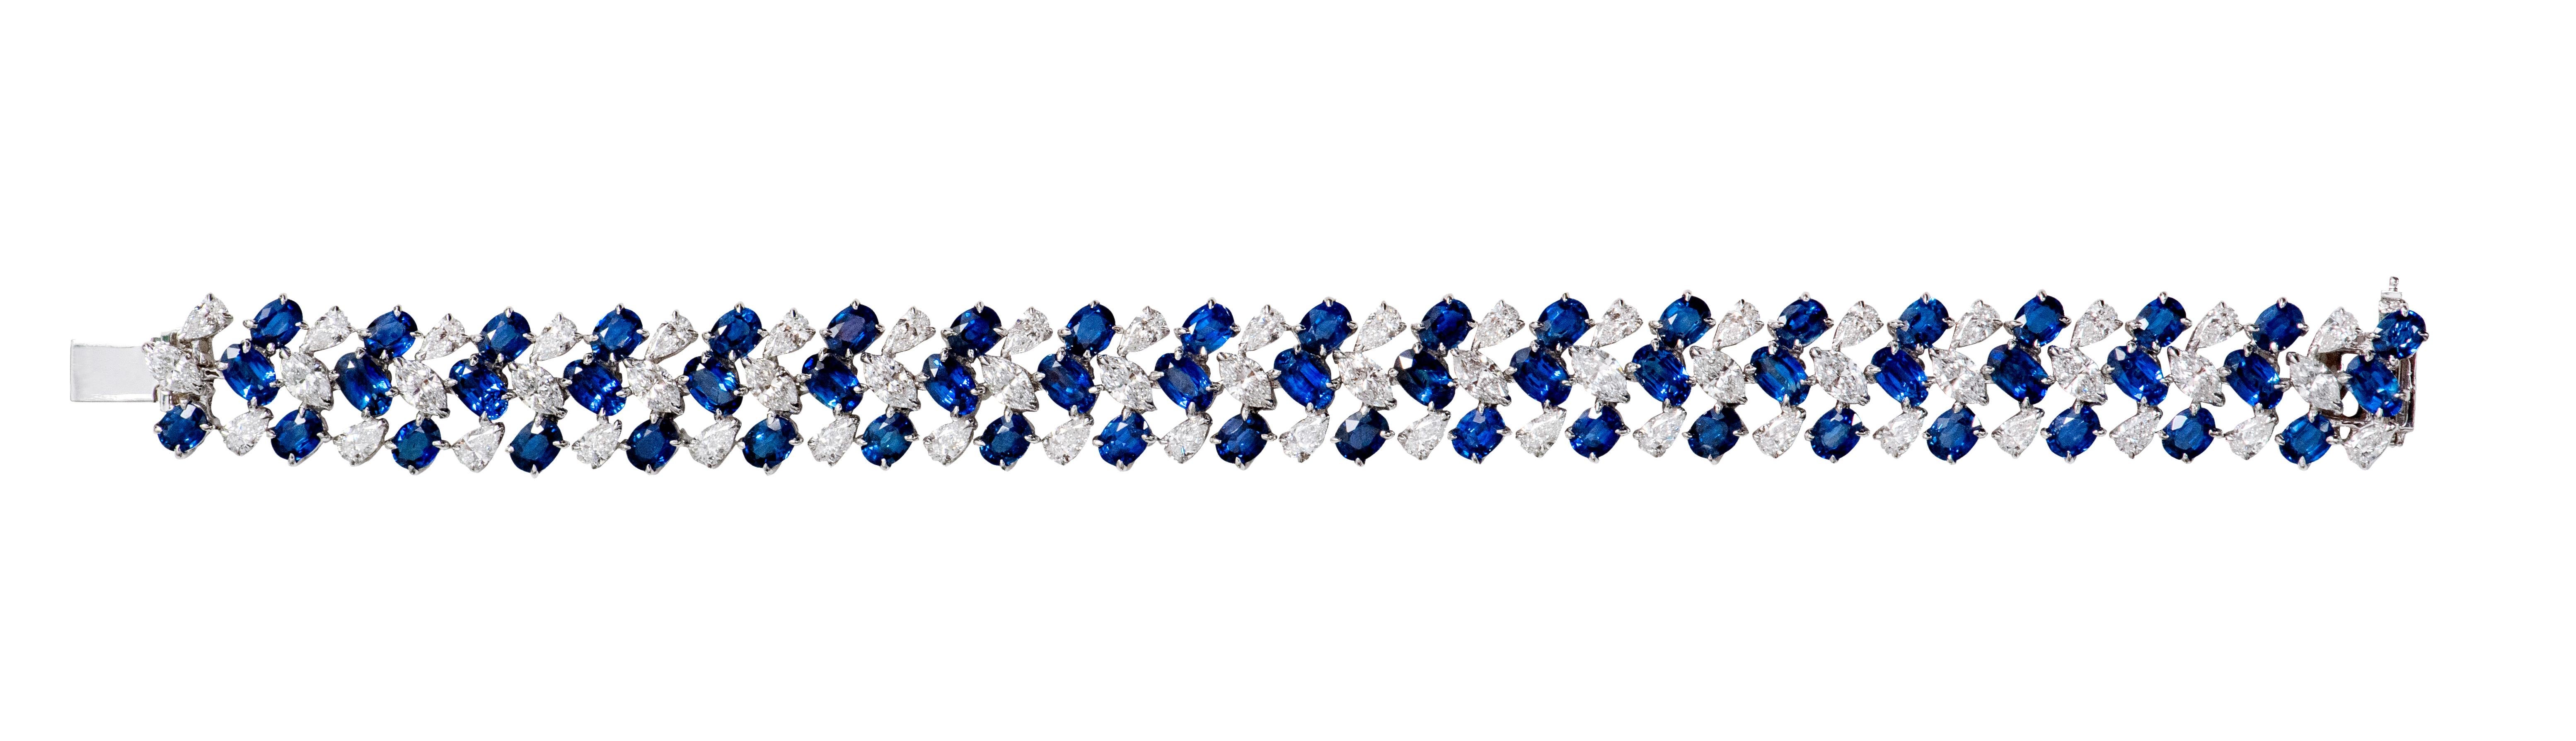 bracelet cocktail en or blanc 18 carats, 27,30 carats, saphir bleu et diamant

Ce glorieux bracelet large flexible en saphir bleu royal et diamant solitaire est sensationnel. Les saphirs solitaires de forme ovale et les diamants solitaires de forme